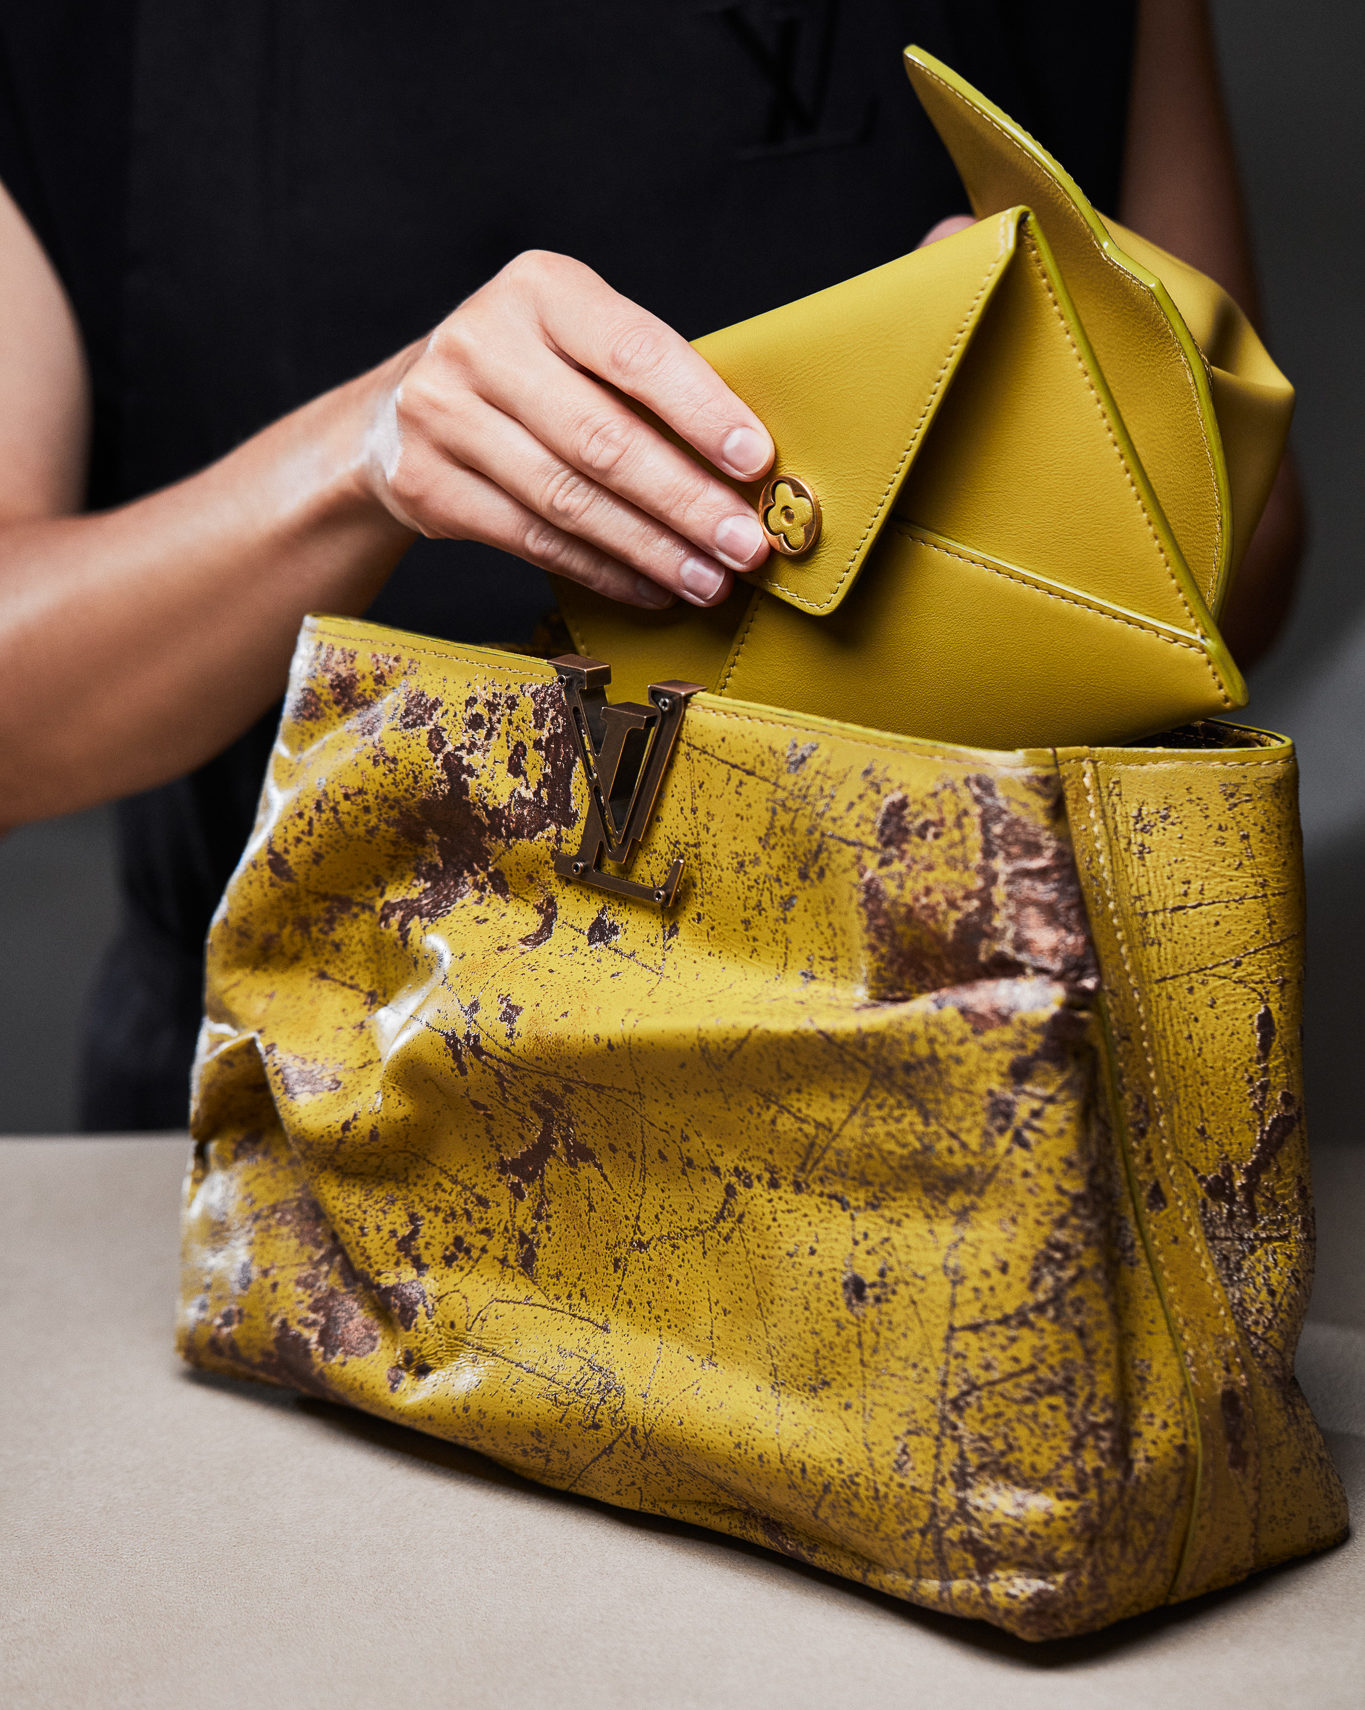 Louis Vuitton “Twist” gold bag – ART IS ALIVE